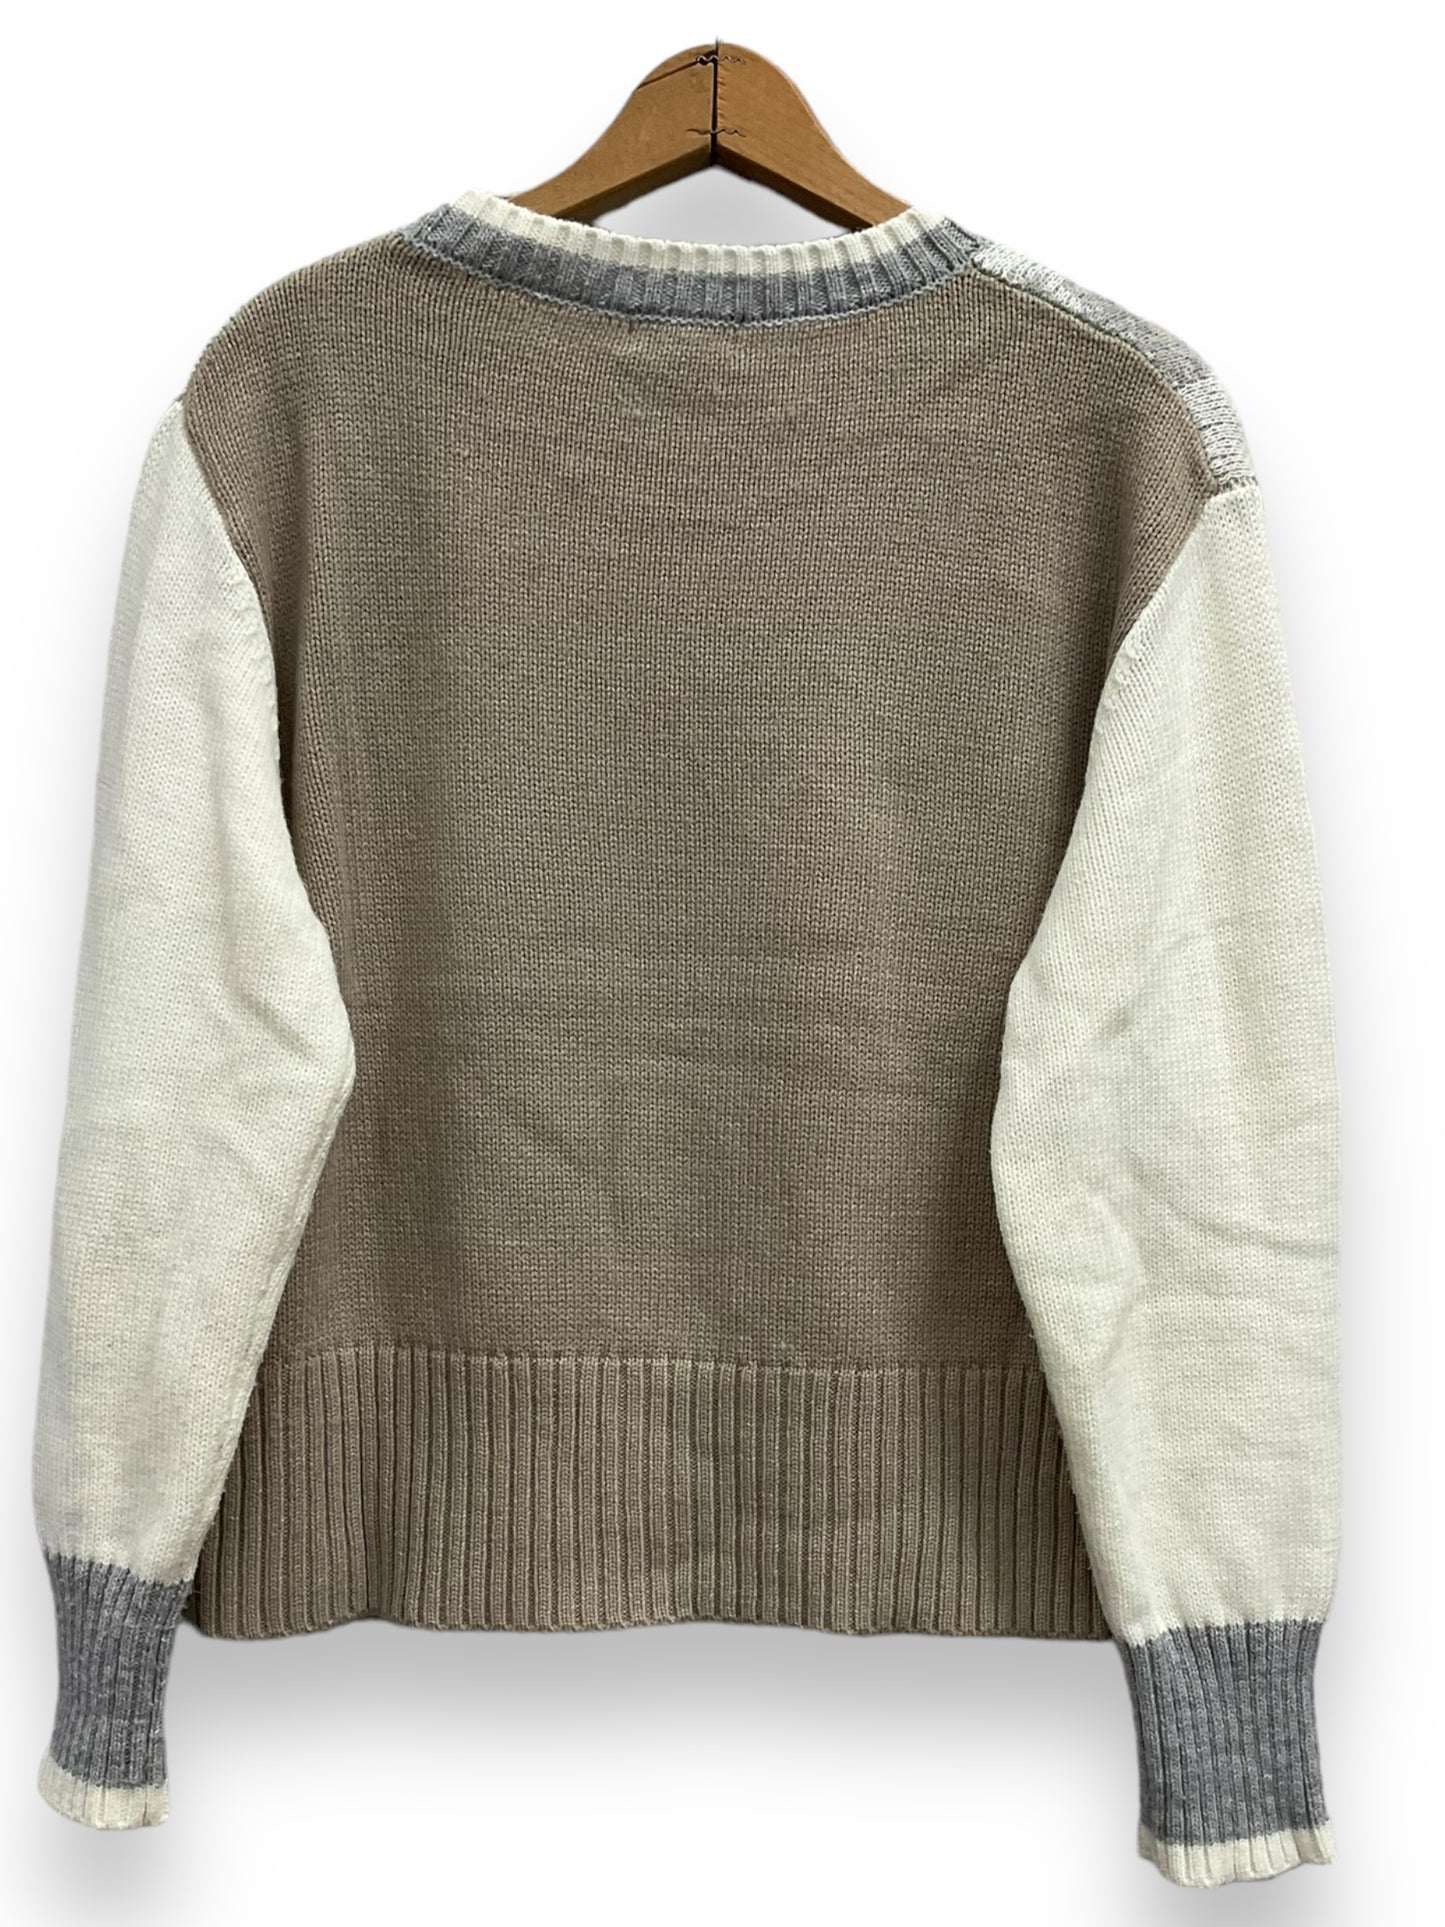 Sweater By Vigoss  Size: M